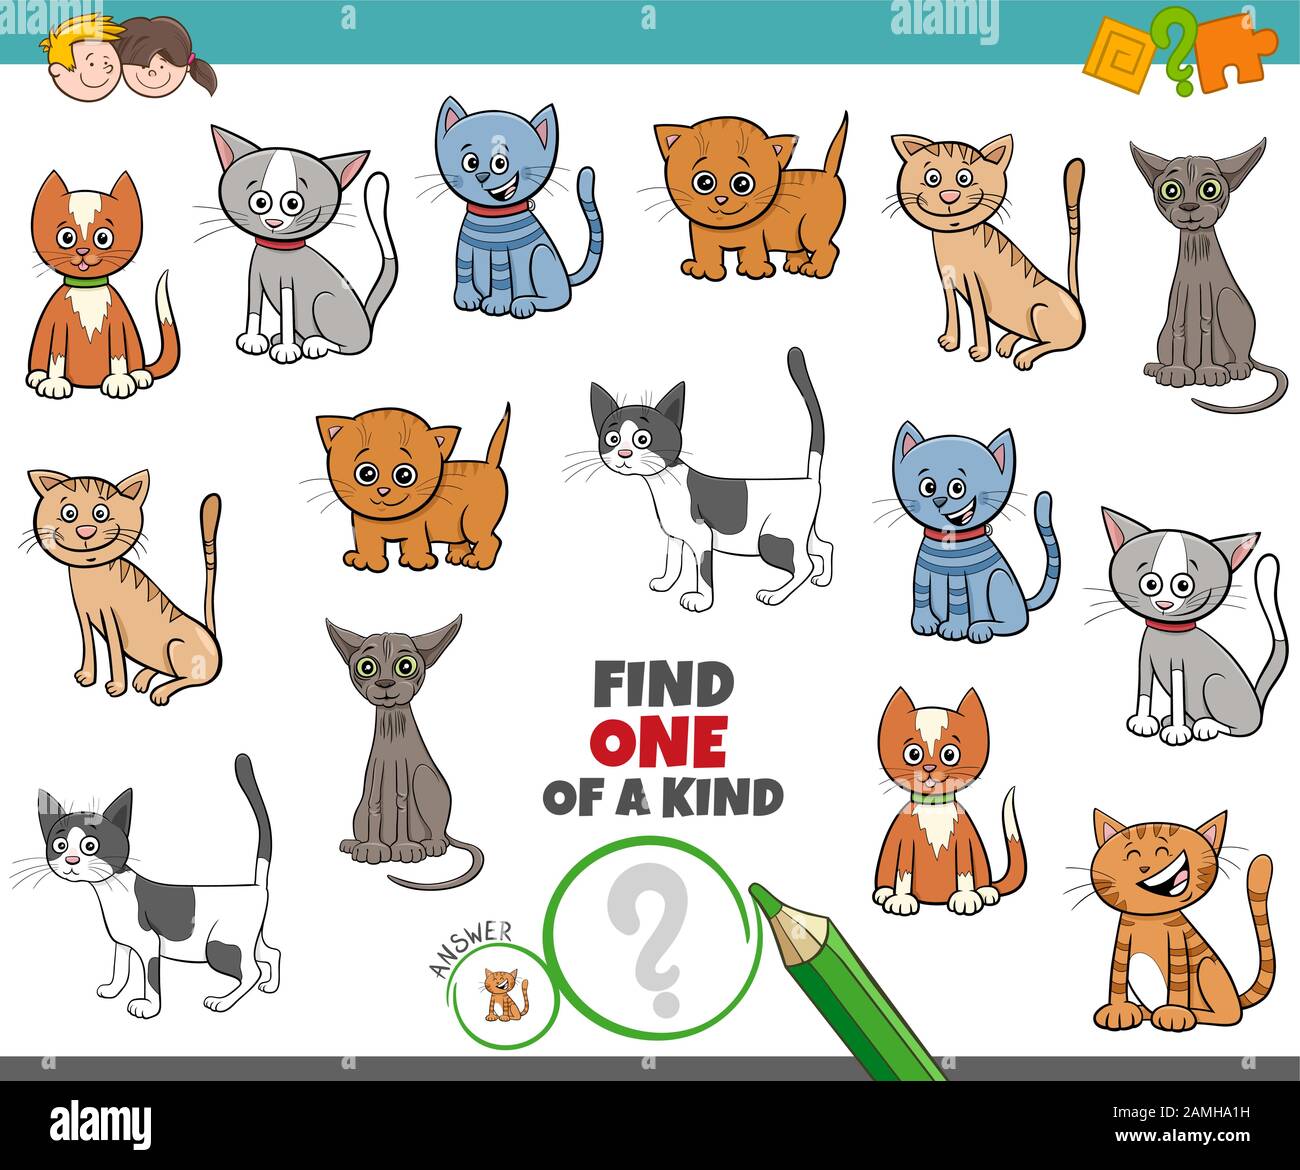 Ilustración de dibujos animados de encontrar Uno De Un Tipo de juego  educativo de imágenes con gatos cómicos y Personajes de Kittens Imagen  Vector de stock - Alamy